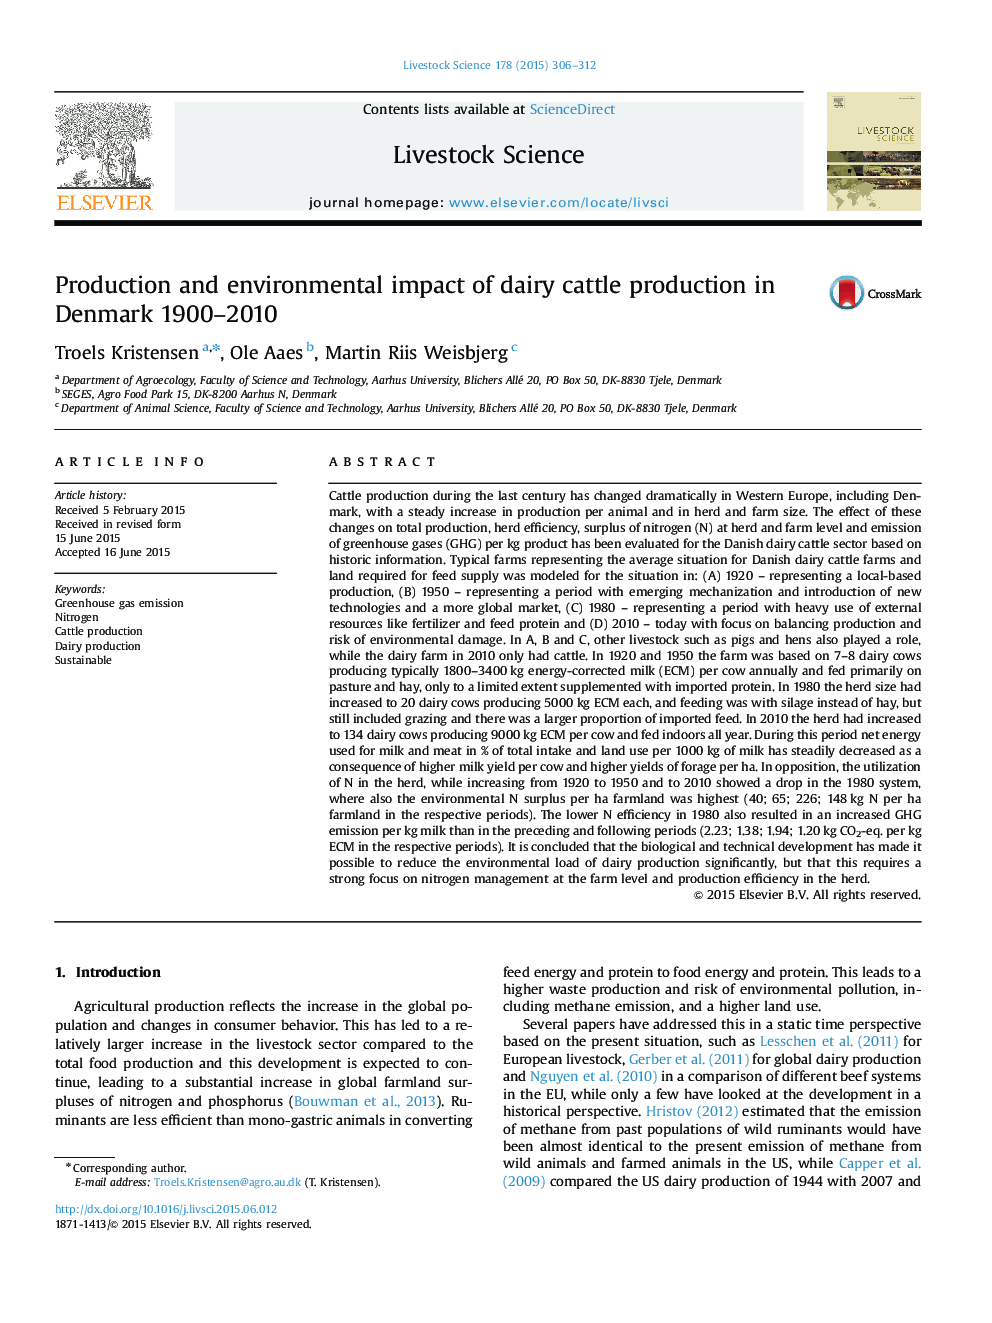 تولید و تاثیرات زیست محیطی تولید گاوهای شیری در دانمارک 1900 سال 2010 